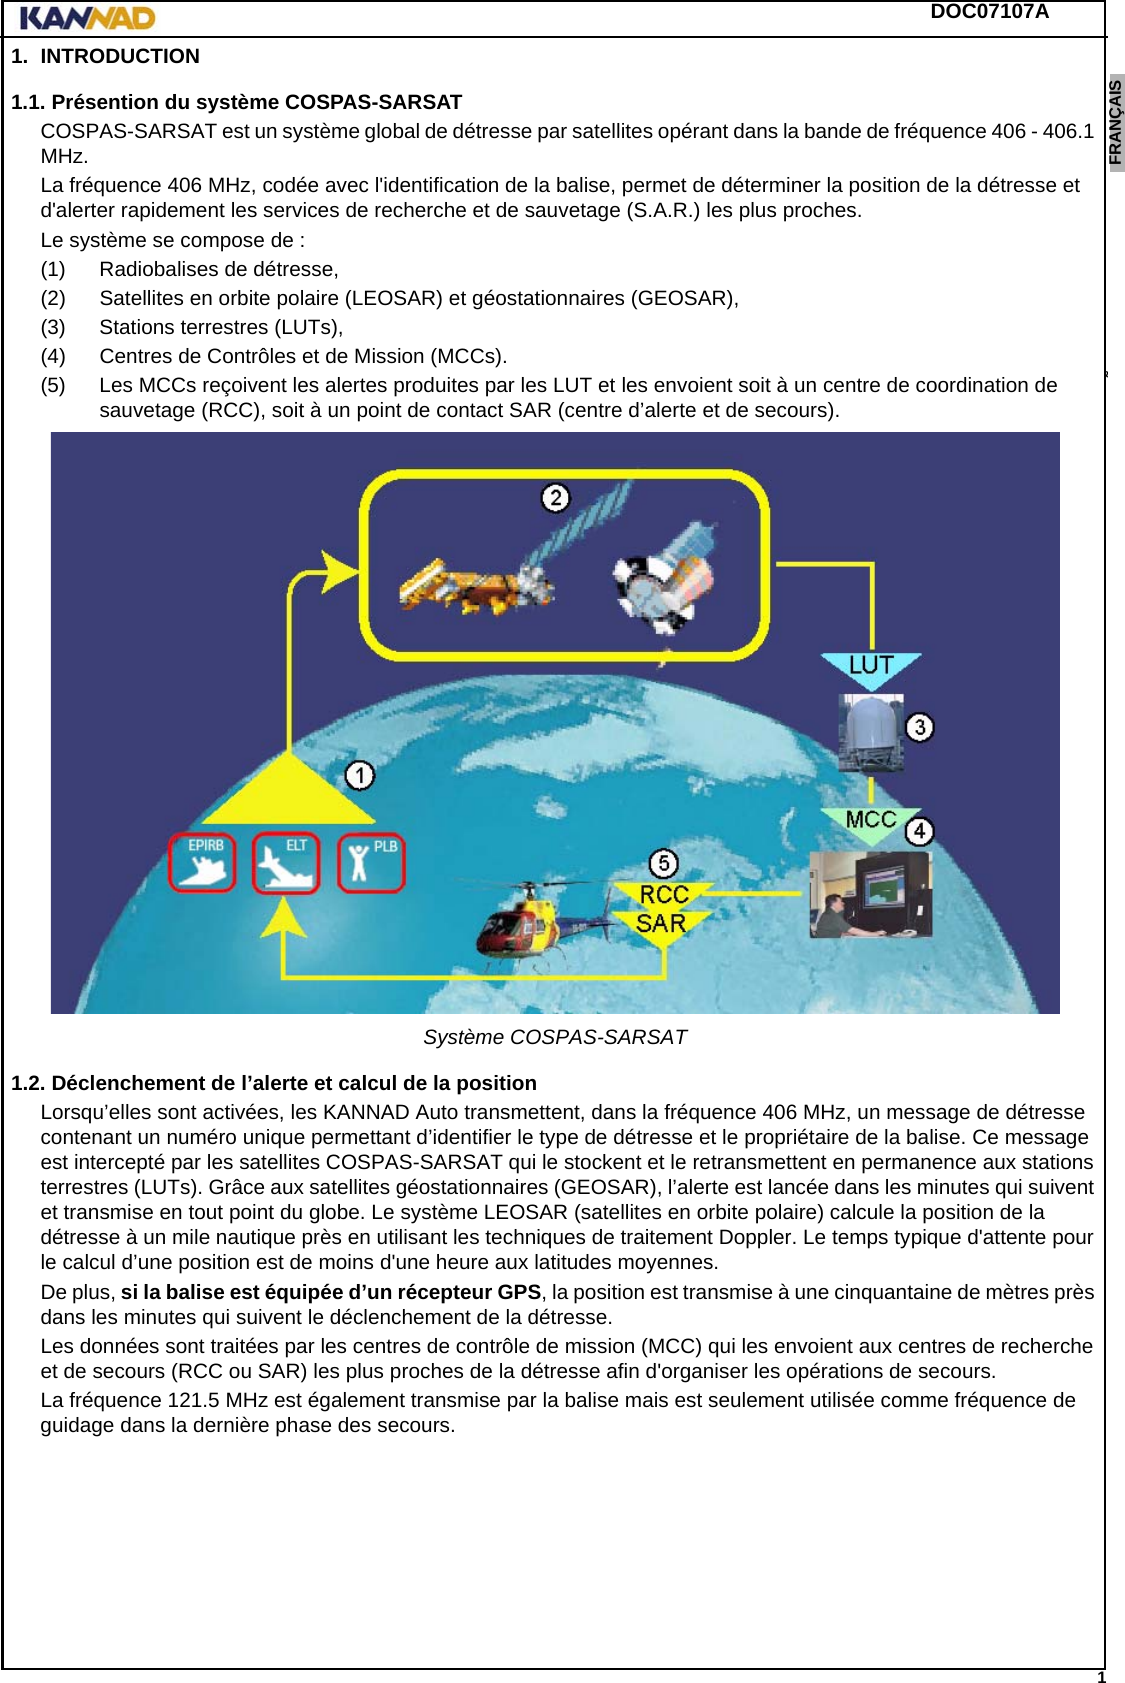 DOC07107A 1ENGLISH ESPAÑOL DEUTSCH  FRANÇAIS ITALIANO NEDERLANDS LANG7 LANG8 LANG9 LANG10 LANG11 LANG12 1. INTRODUCTION1.1. Présention du système COSPAS-SARSATCOSPAS-SARSAT est un système global de détresse par satellites opérant dans la bande de fréquence 406 - 406.1 MHz.La fréquence 406 MHz, codée avec l&apos;identification de la balise, permet de déterminer la position de la détresse et d&apos;alerter rapidement les services de recherche et de sauvetage (S.A.R.) les plus proches.Le système se compose de :(1) Radiobalises de détresse,(2) Satellites en orbite polaire (LEOSAR) et géostationnaires (GEOSAR),(3) Stations terrestres (LUTs),(4) Centres de Contrôles et de Mission (MCCs).(5) Les MCCs reçoivent les alertes produites par les LUT et les envoient soit à un centre de coordination de sauvetage (RCC), soit à un point de contact SAR (centre d’alerte et de secours).Système COSPAS-SARSAT1.2. Déclenchement de l’alerte et calcul de la positionLorsqu’elles sont activées, les KANNAD Auto transmettent, dans la fréquence 406 MHz, un message de détresse contenant un numéro unique permettant d’identifier le type de détresse et le propriétaire de la balise. Ce message est intercepté par les satellites COSPAS-SARSAT qui le stockent et le retransmettent en permanence aux stations terrestres (LUTs). Grâce aux satellites géostationnaires (GEOSAR), l’alerte est lancée dans les minutes qui suivent et transmise en tout point du globe. Le système LEOSAR (satellites en orbite polaire) calcule la position de la détresse à un mile nautique près en utilisant les techniques de traitement Doppler. Le temps typique d&apos;attente pour le calcul d’une position est de moins d&apos;une heure aux latitudes moyennes.De plus, si la balise est équipée d’un récepteur GPS, la position est transmise à une cinquantaine de mètres près dans les minutes qui suivent le déclenchement de la détresse.Les données sont traitées par les centres de contrôle de mission (MCC) qui les envoient aux centres de recherche et de secours (RCC ou SAR) les plus proches de la détresse afin d&apos;organiser les opérations de secours.La fréquence 121.5 MHz est également transmise par la balise mais est seulement utilisée comme fréquence de guidage dans la dernière phase des secours.